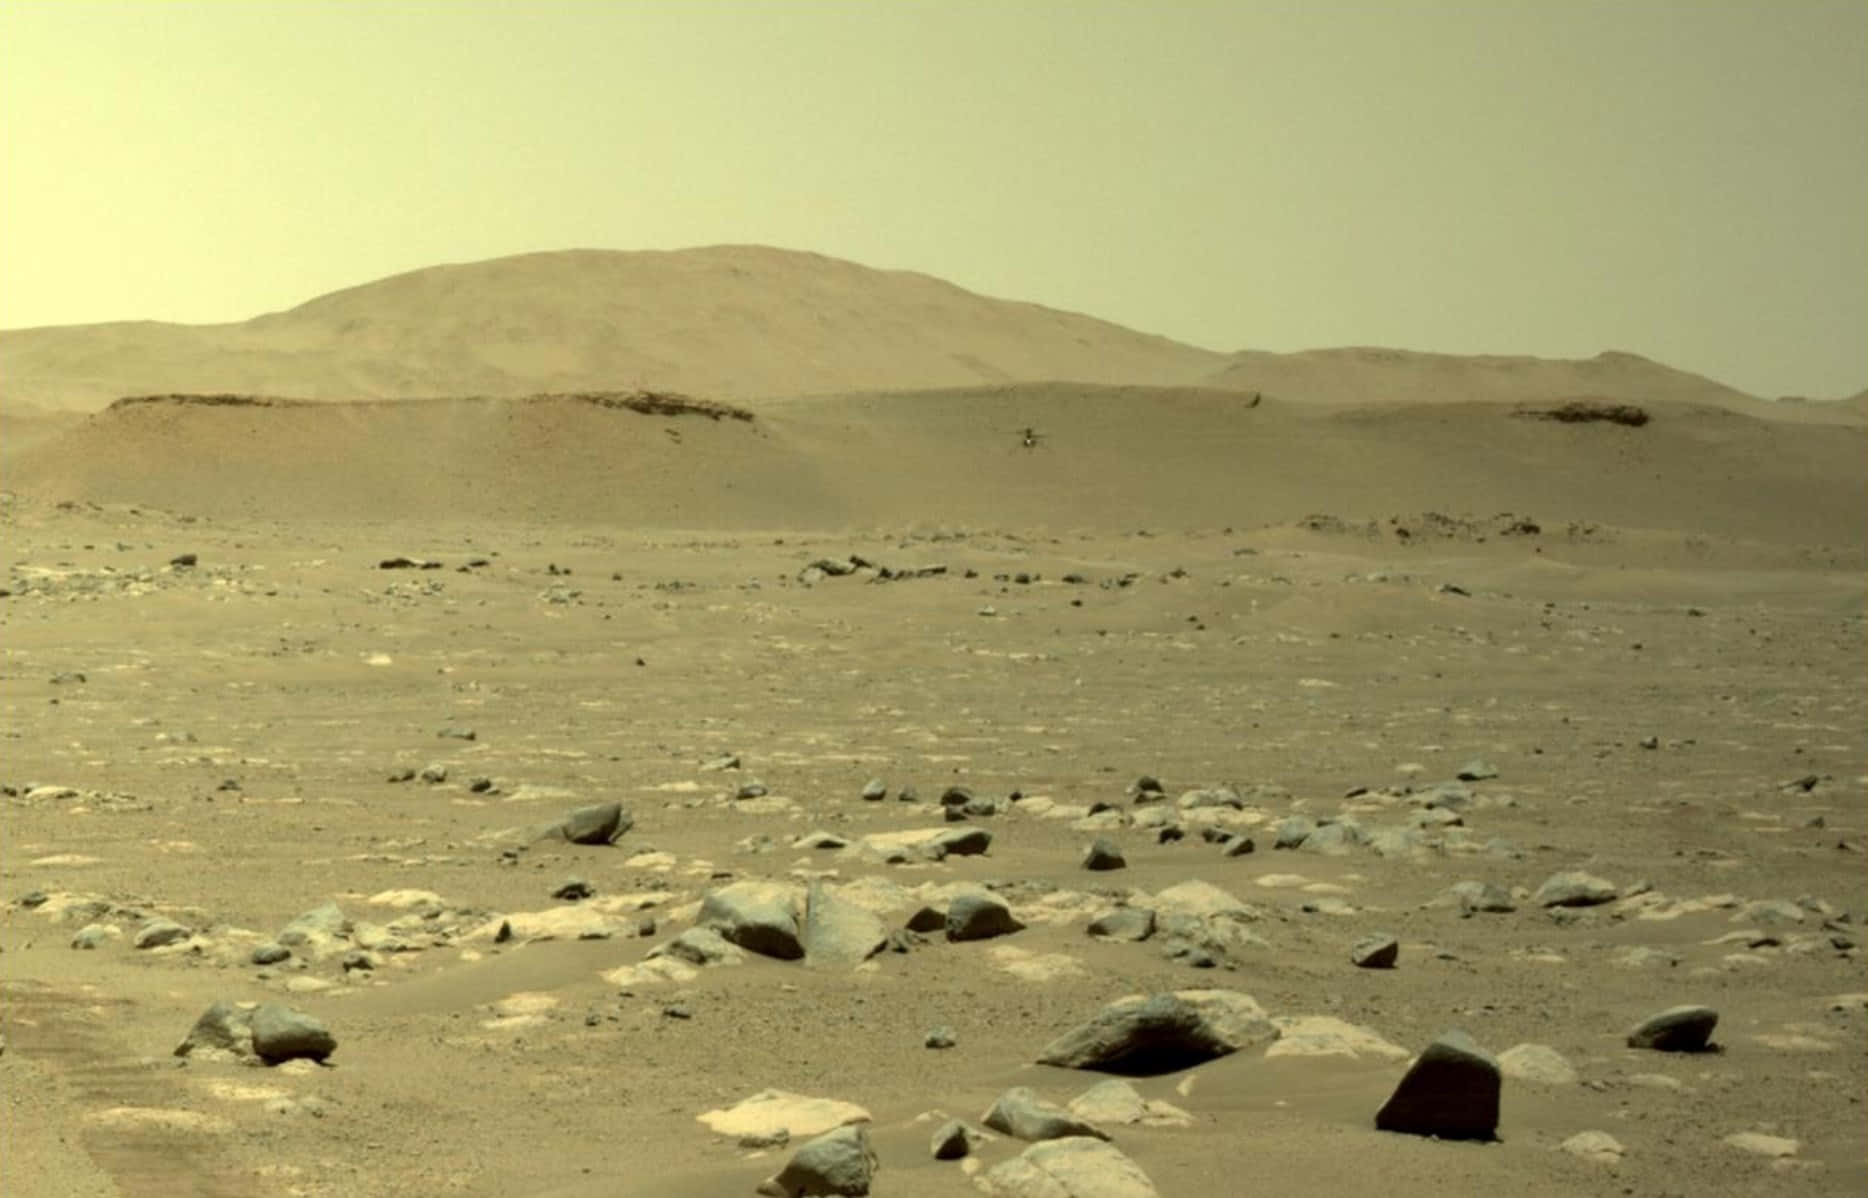 En udsigt over det klippefyldte landskab på Mars